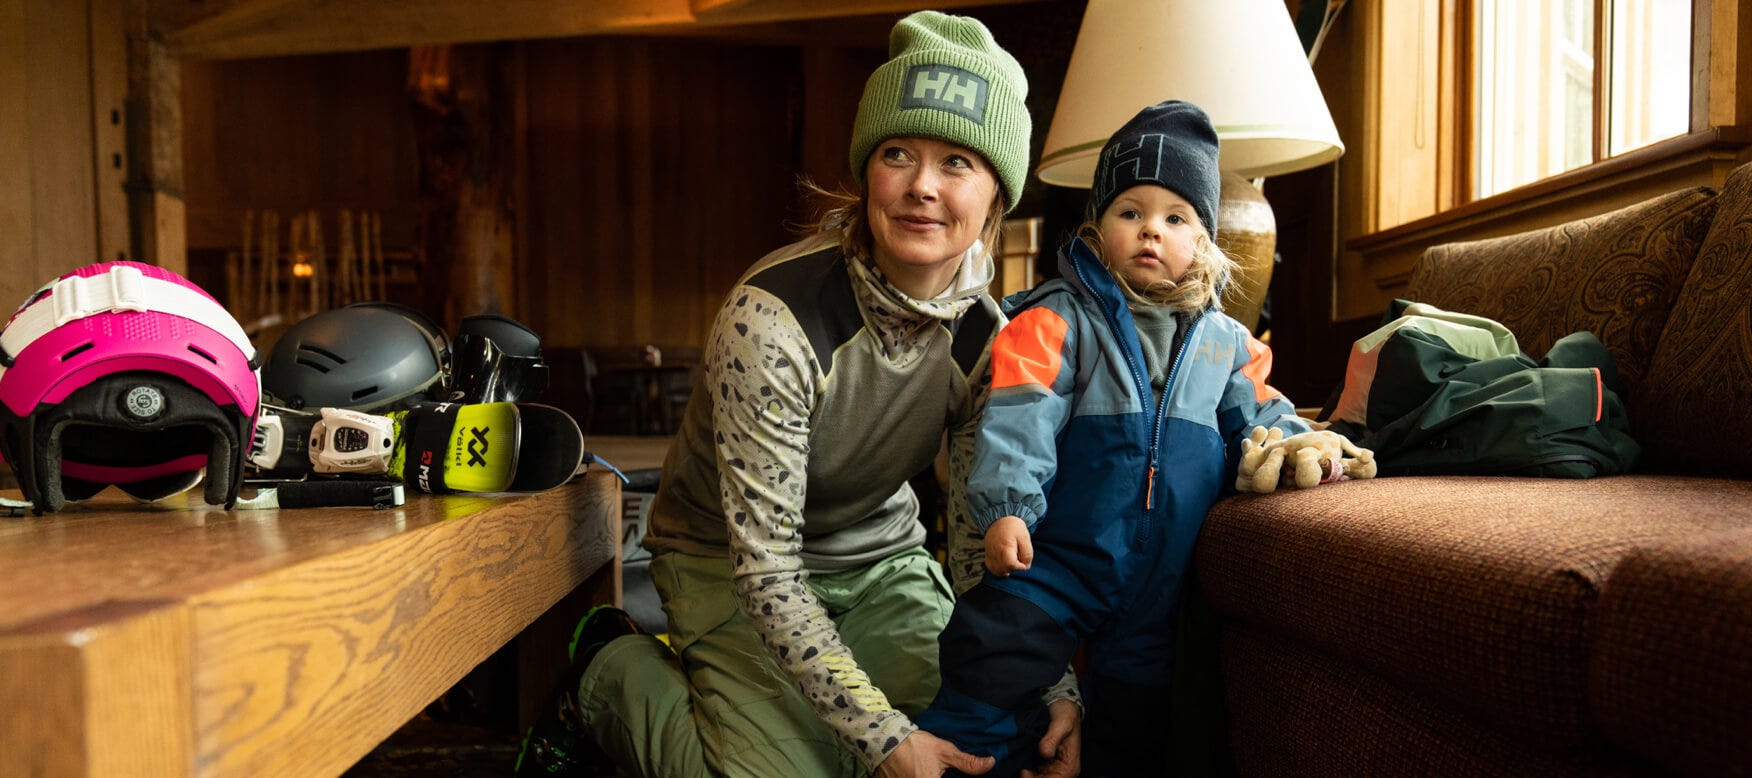 kaylin with her daughter in helly hansen ski gear